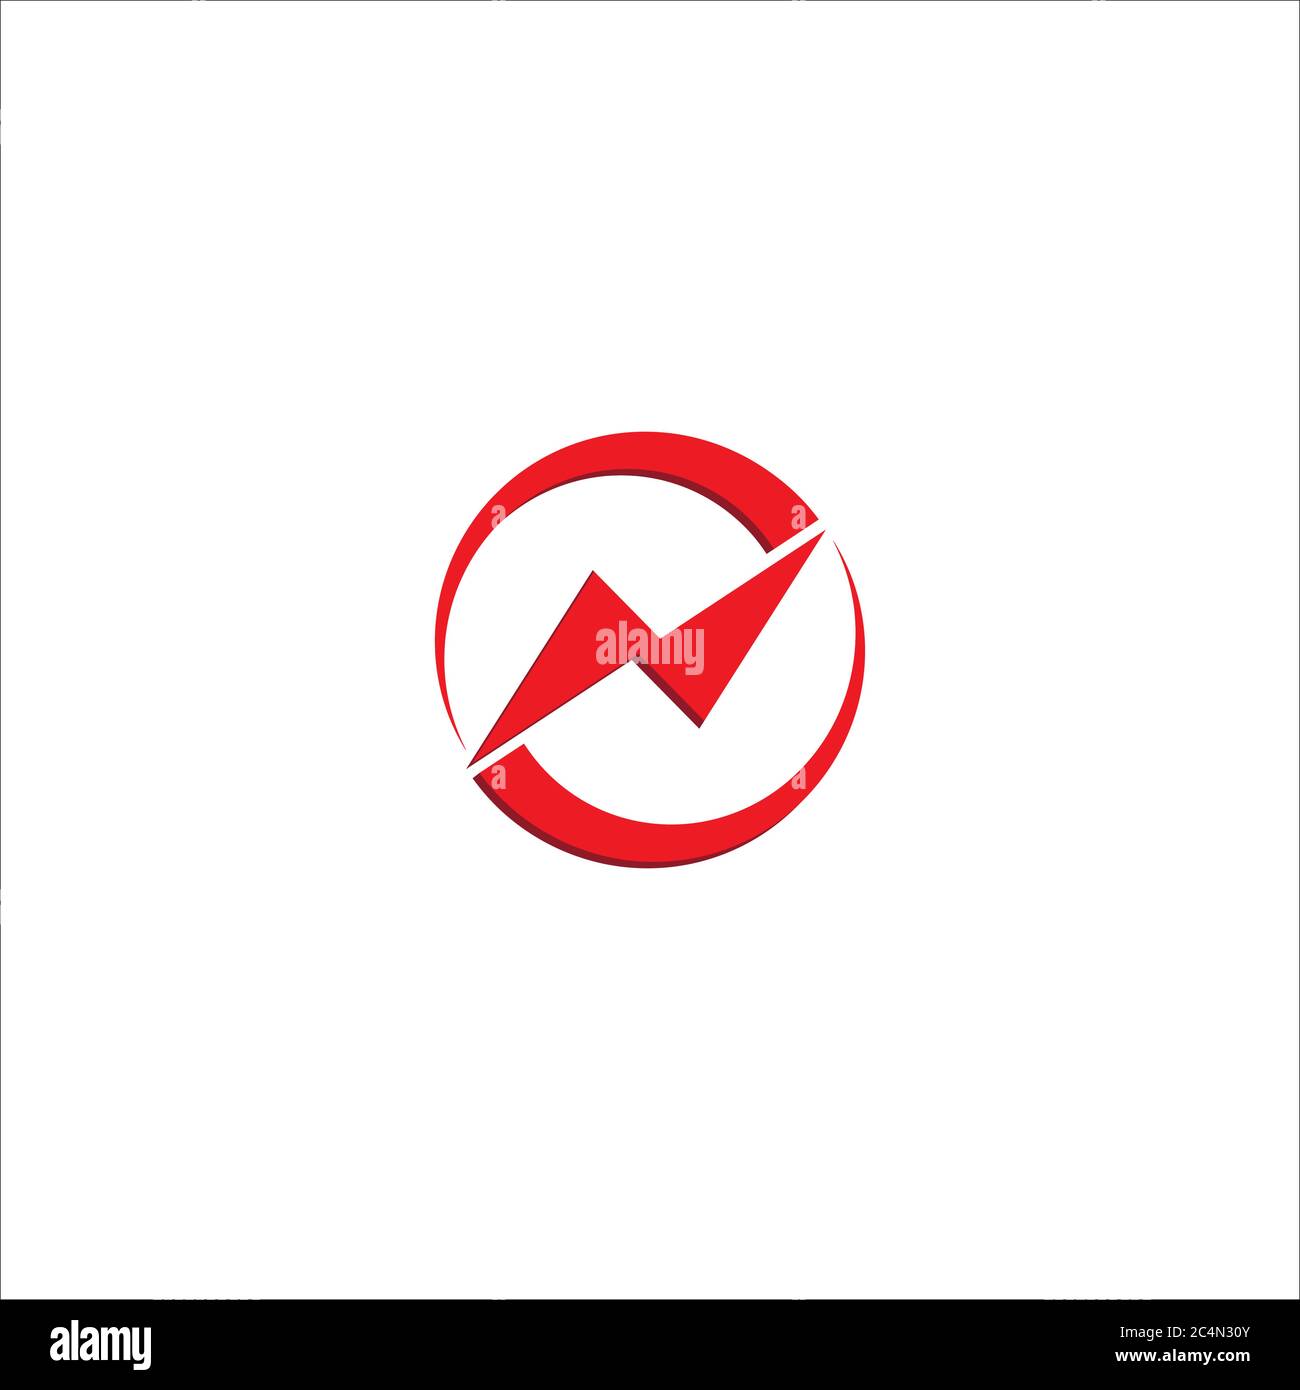 Carta N Plantilla Inicial De Diseño De Logotipo El Lema Con El Concepto De Logotipo Vortex 0209